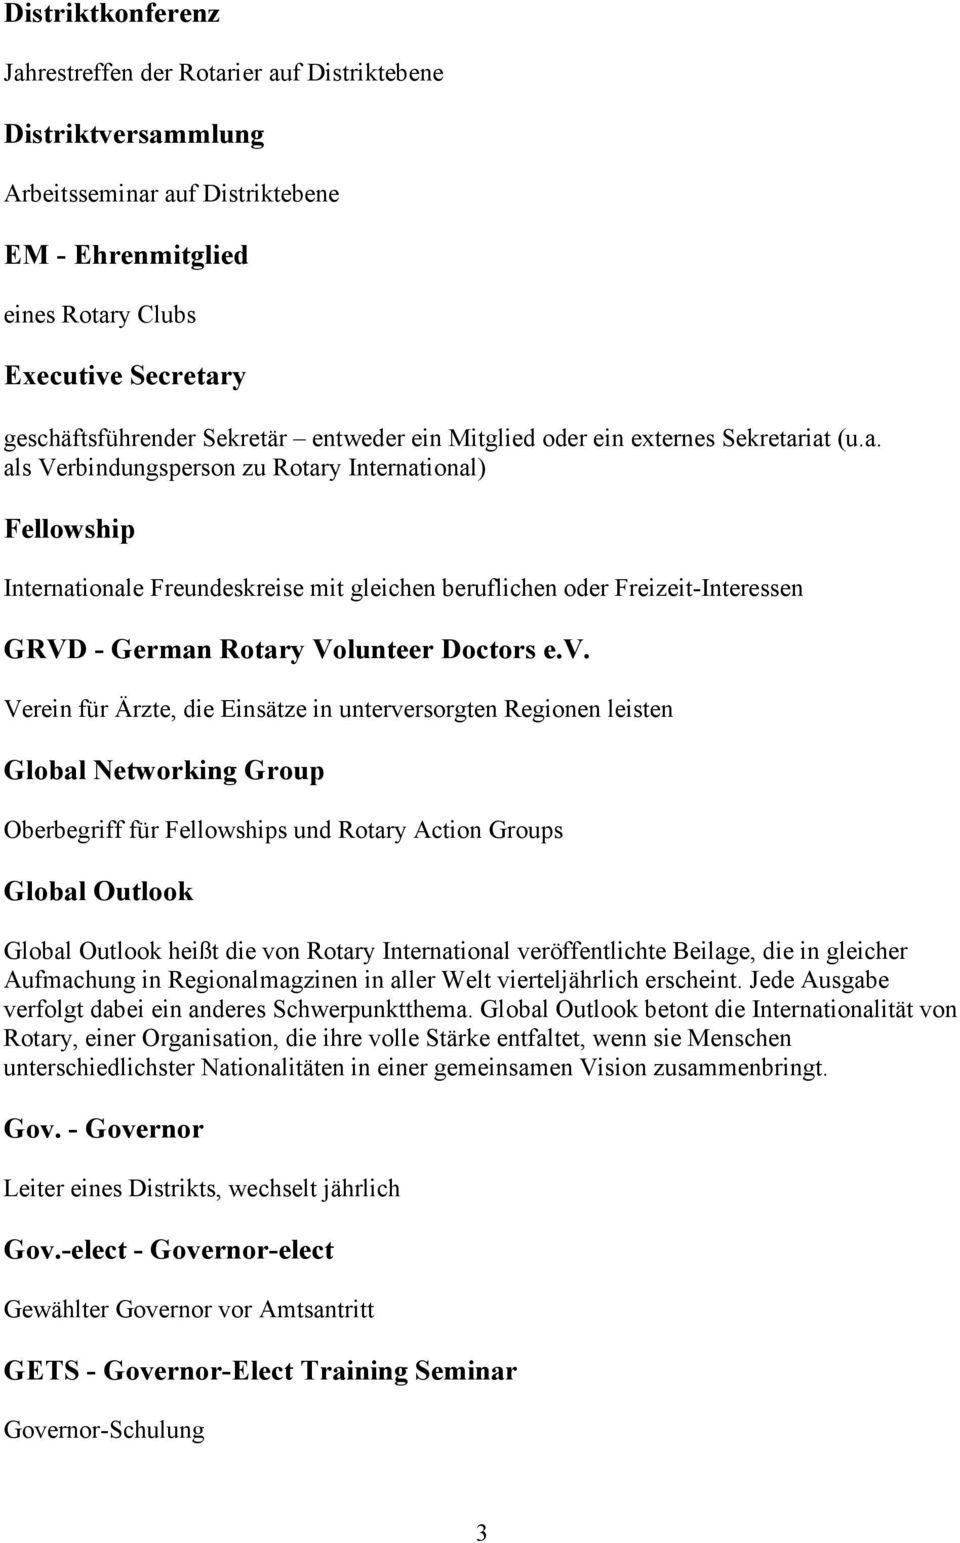 iat (u.a. als Verbindungsperson zu Rotary International) Fellowship Internationale Freundeskreise mit gleichen beruflichen oder Freizeit-Interessen GRVD - German Rotary Volunteer Doctors e.v.